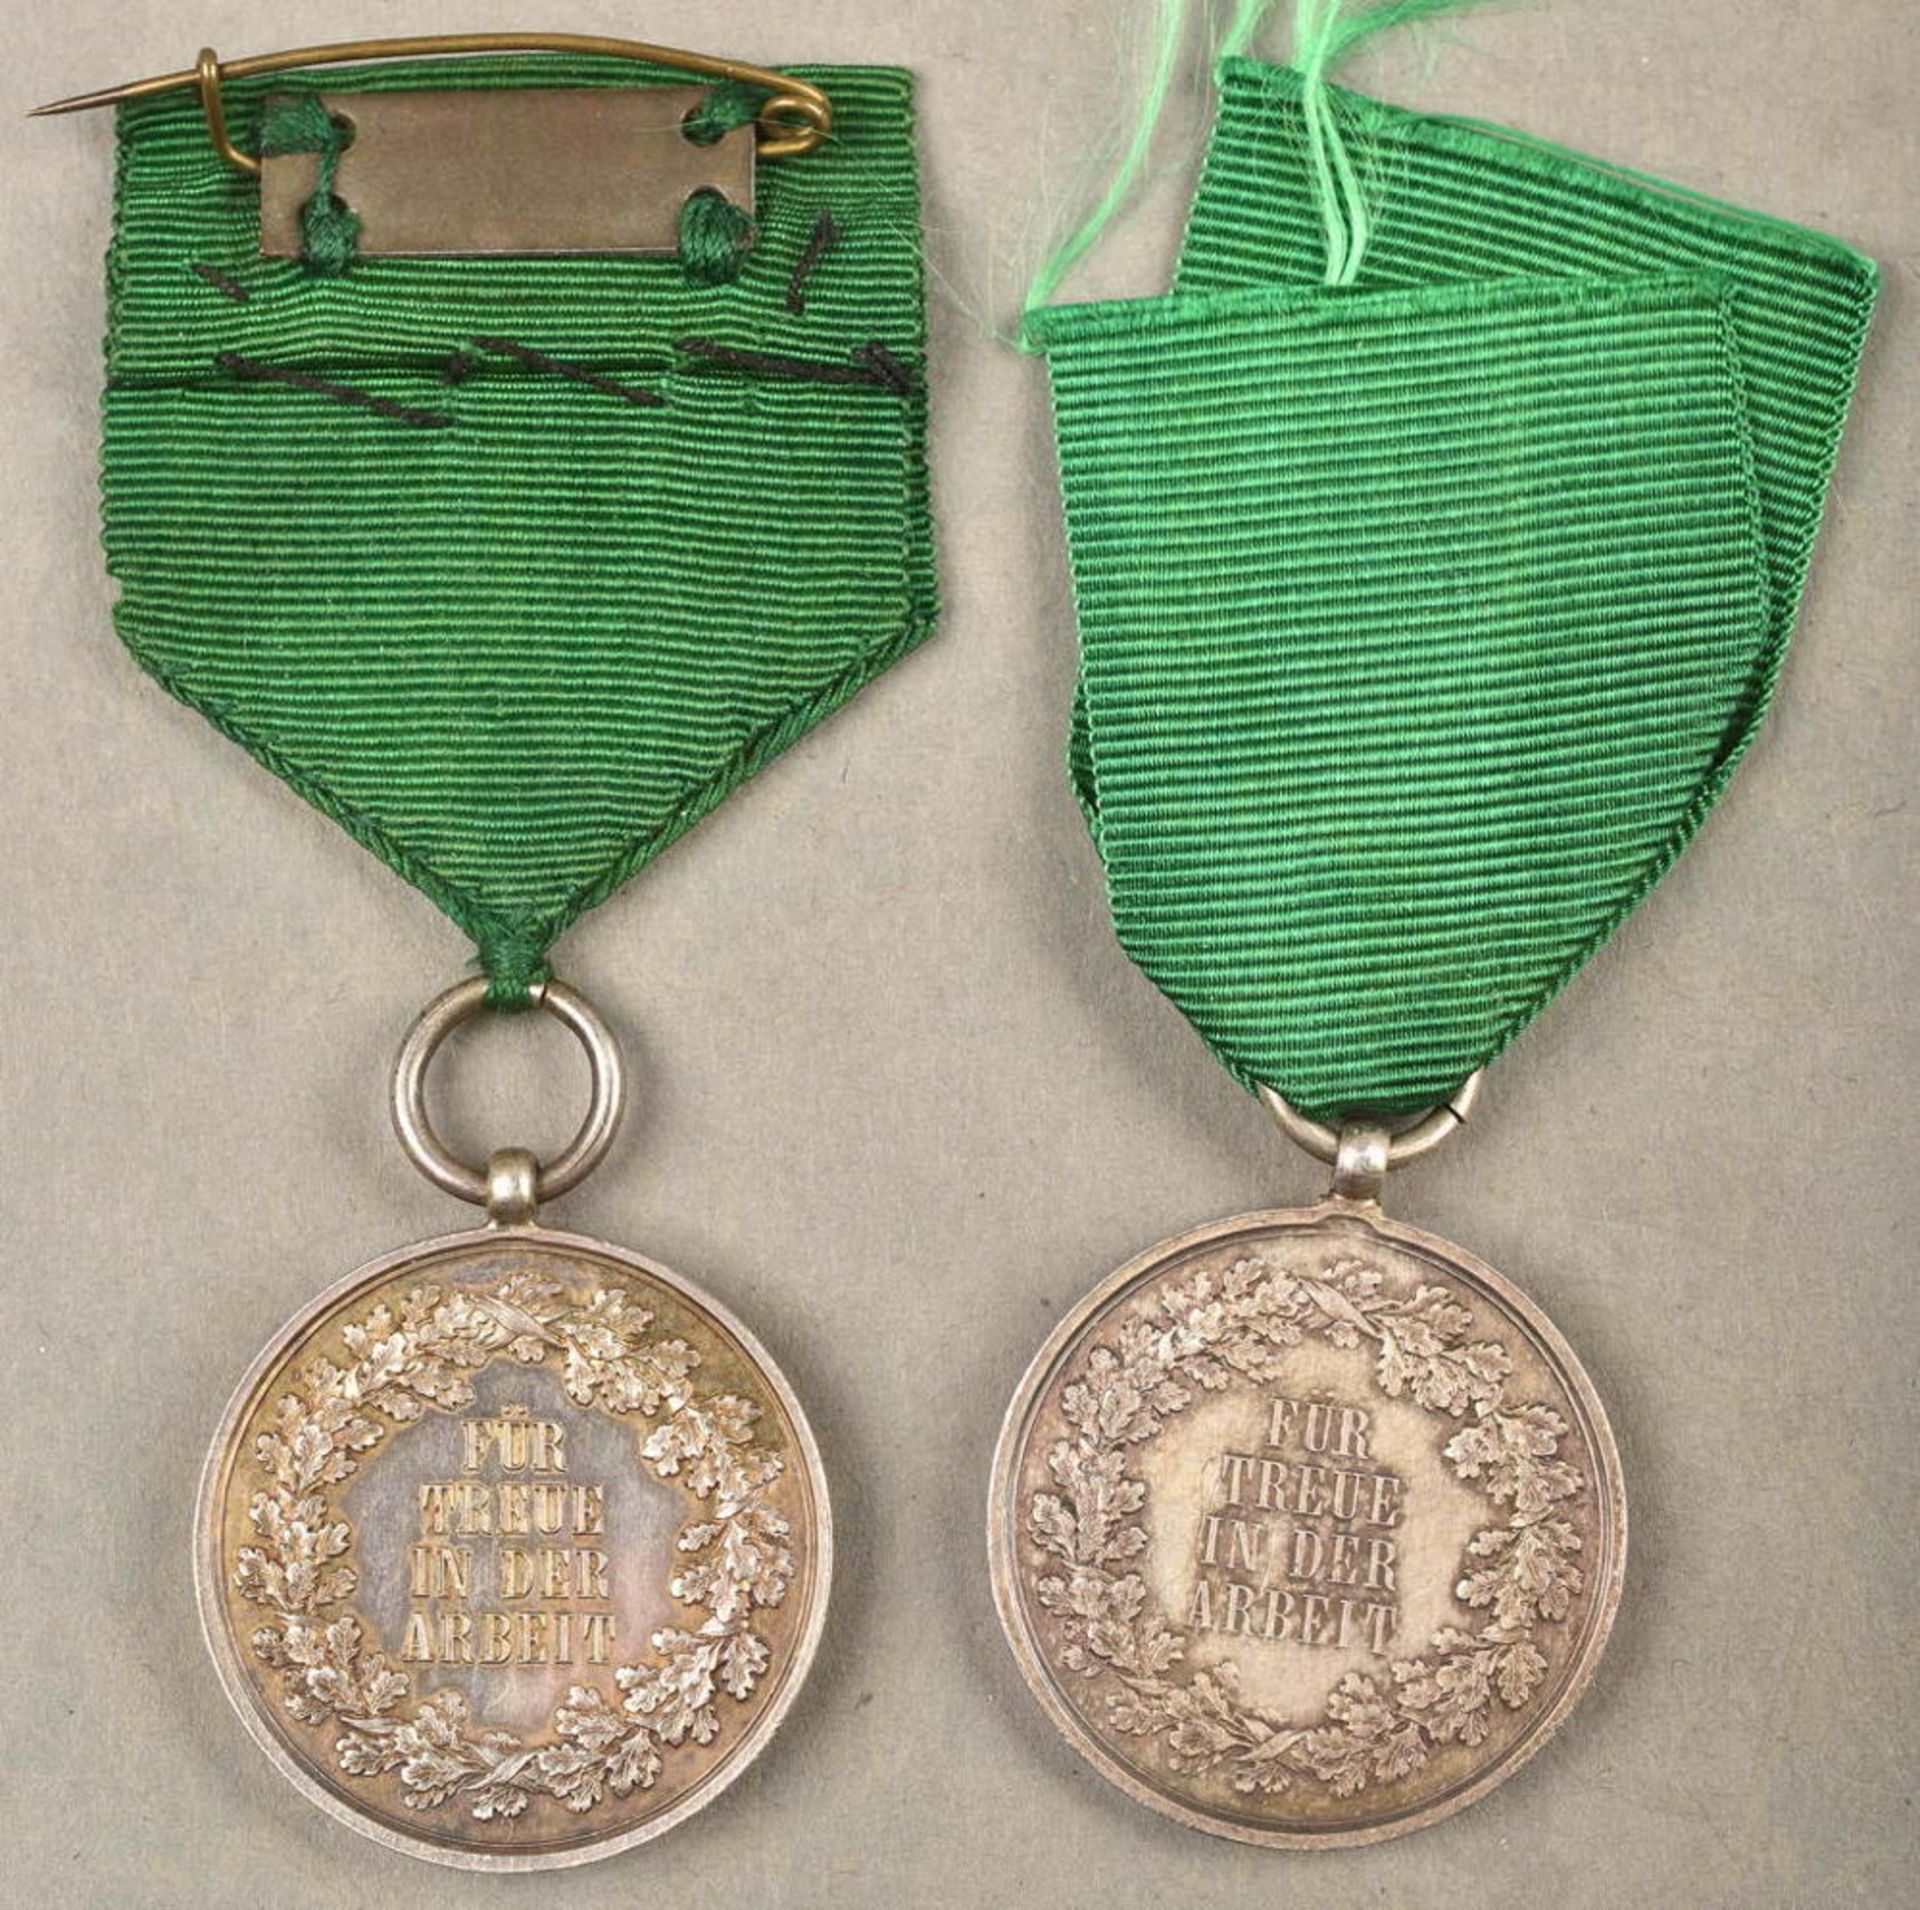 2 Medaillen Für Treue in der Arbeit - Image 3 of 4